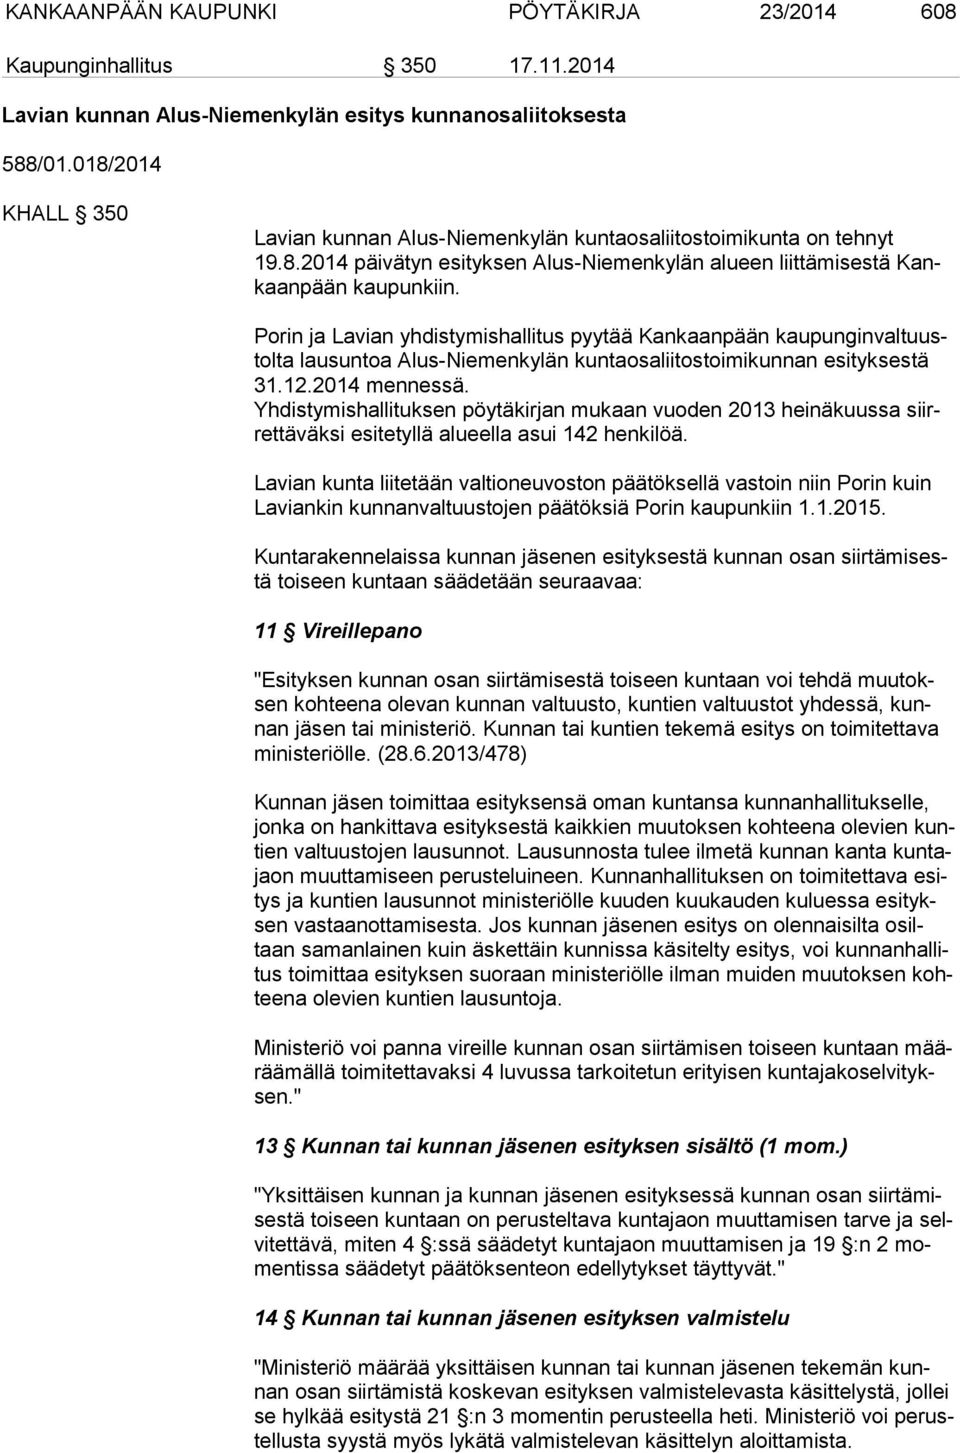 Porin ja Lavian yhdistymishallitus pyytää Kankaanpään kau pun gin val tuustol ta lausuntoa Alus-Niemenkylän kuntaosaliitostoimikunnan esityksestä 31.12.2014 mennessä.